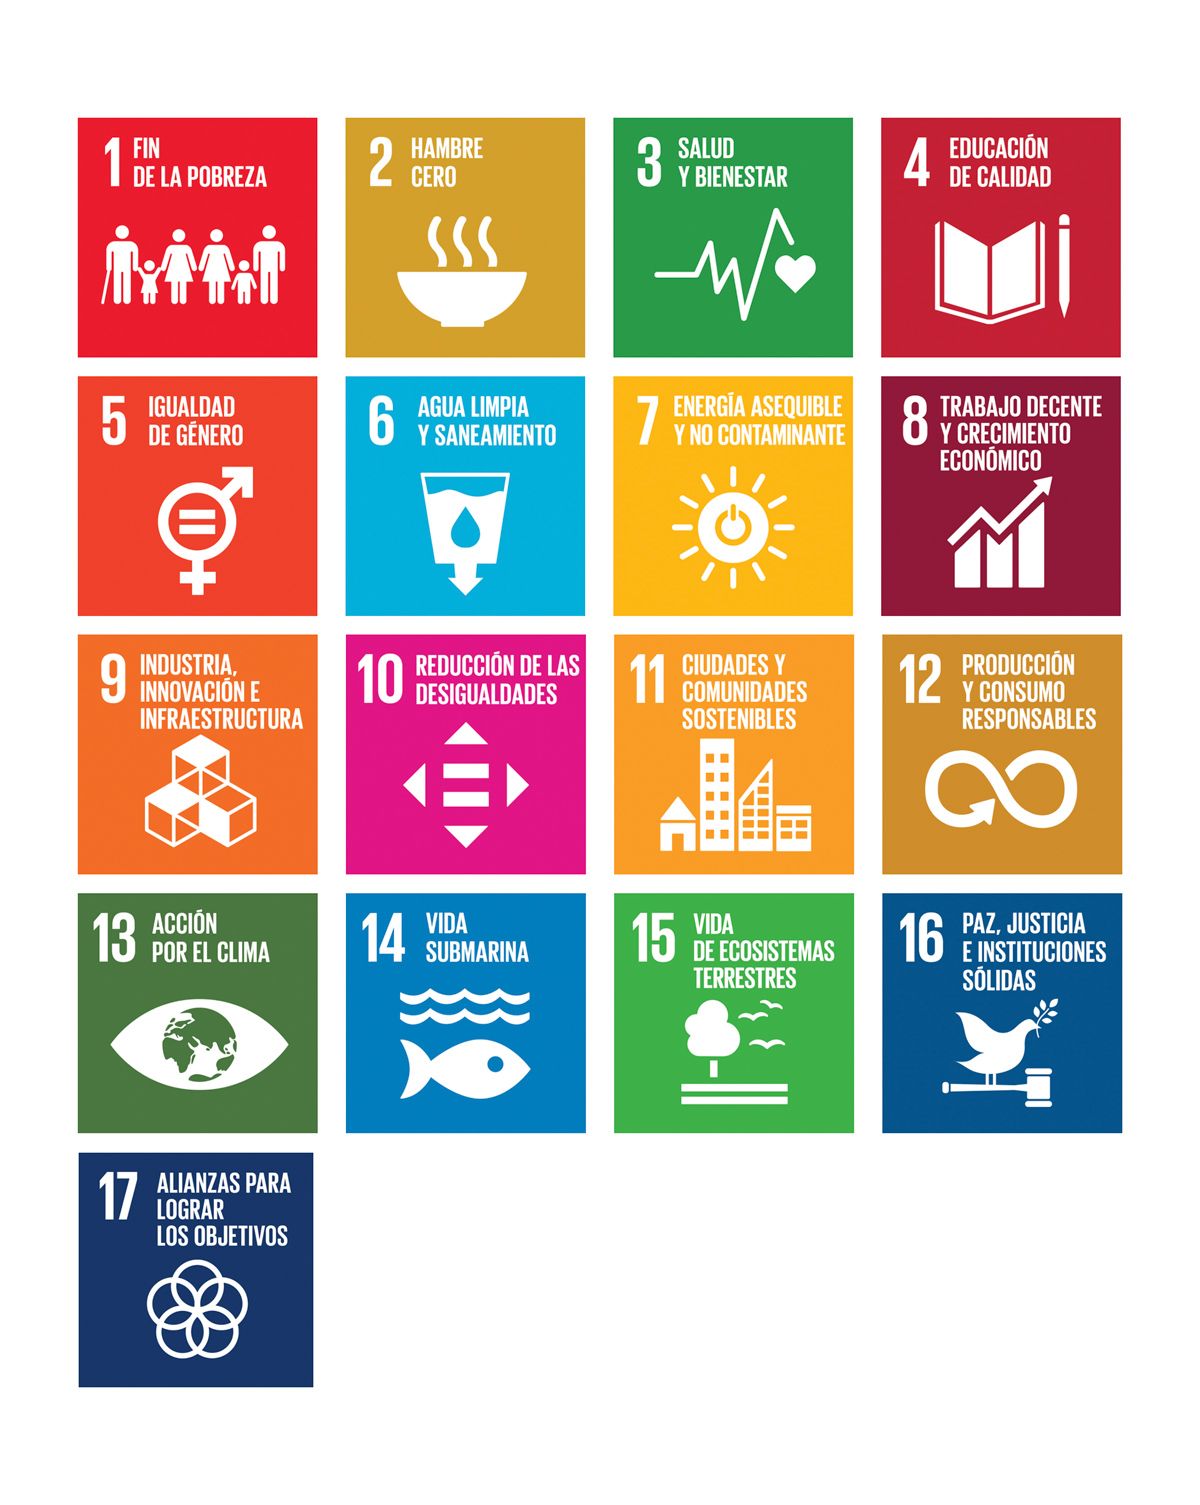 INV_039_Elisa-Hdez_Que-son-los-objetivos-de-desarrollo-sostenible_ODS_imagen-interior